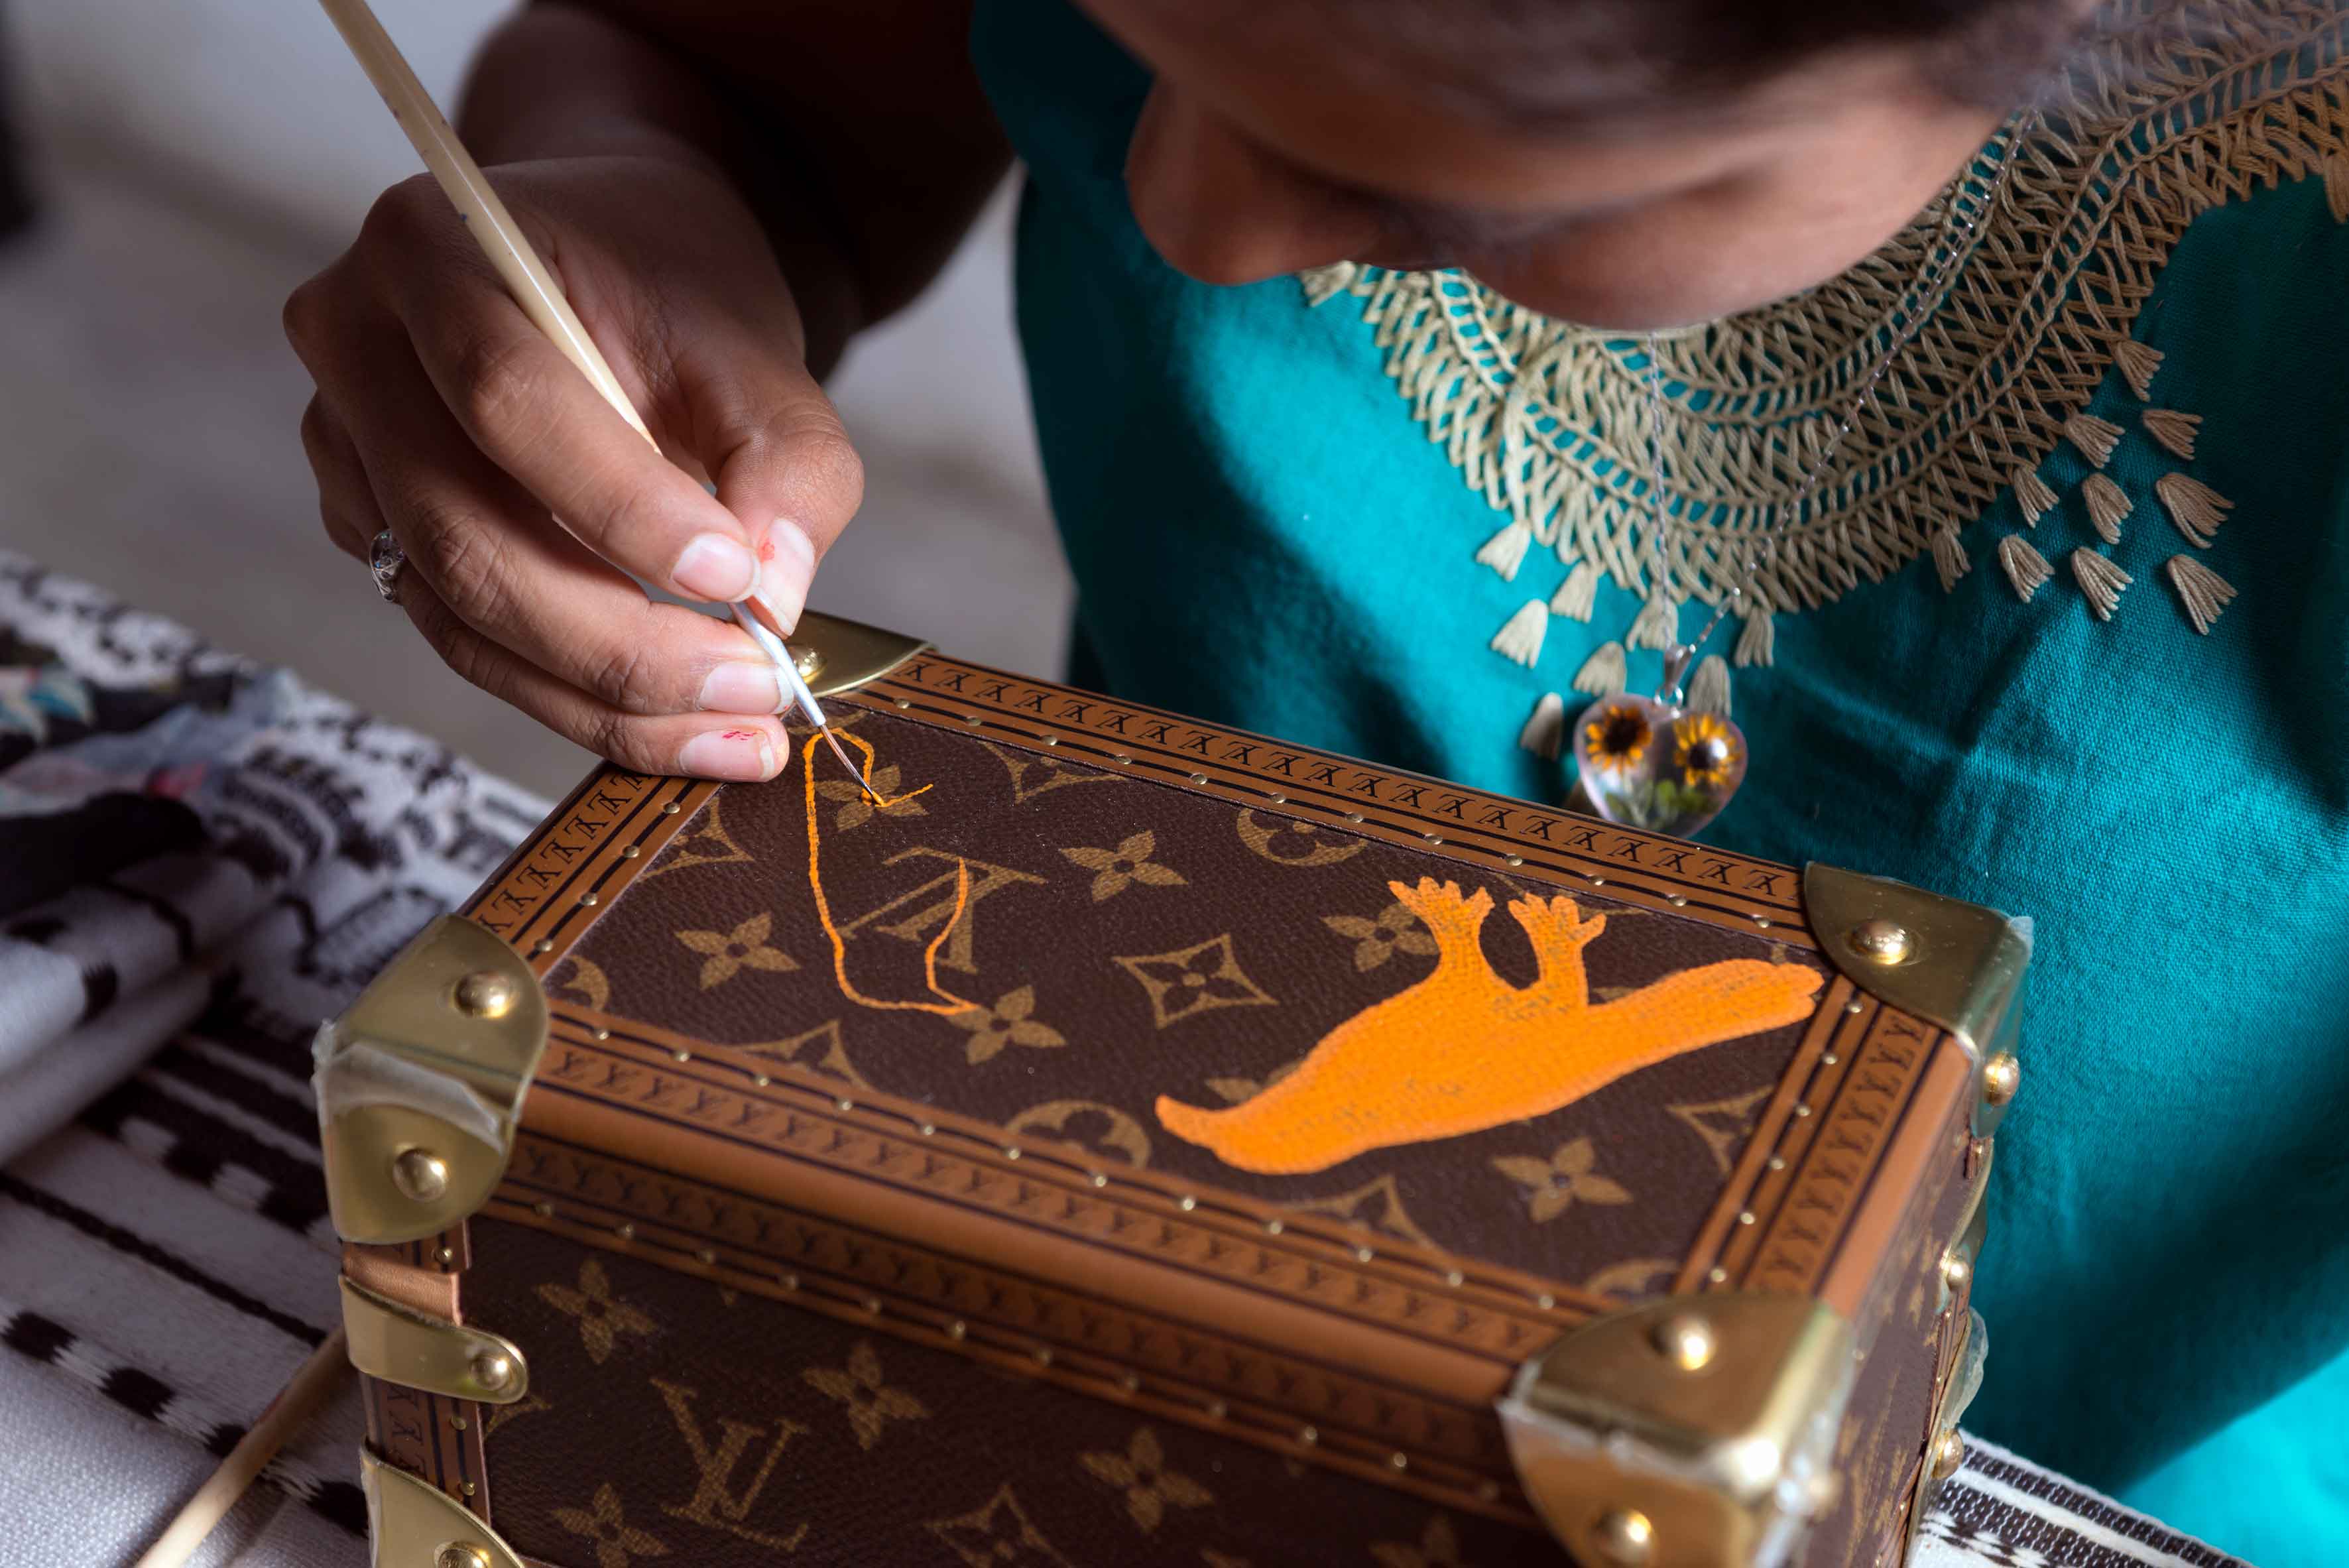 Maestros artesanos oaxaqueños intervienen los baúles de Louis Vuitton